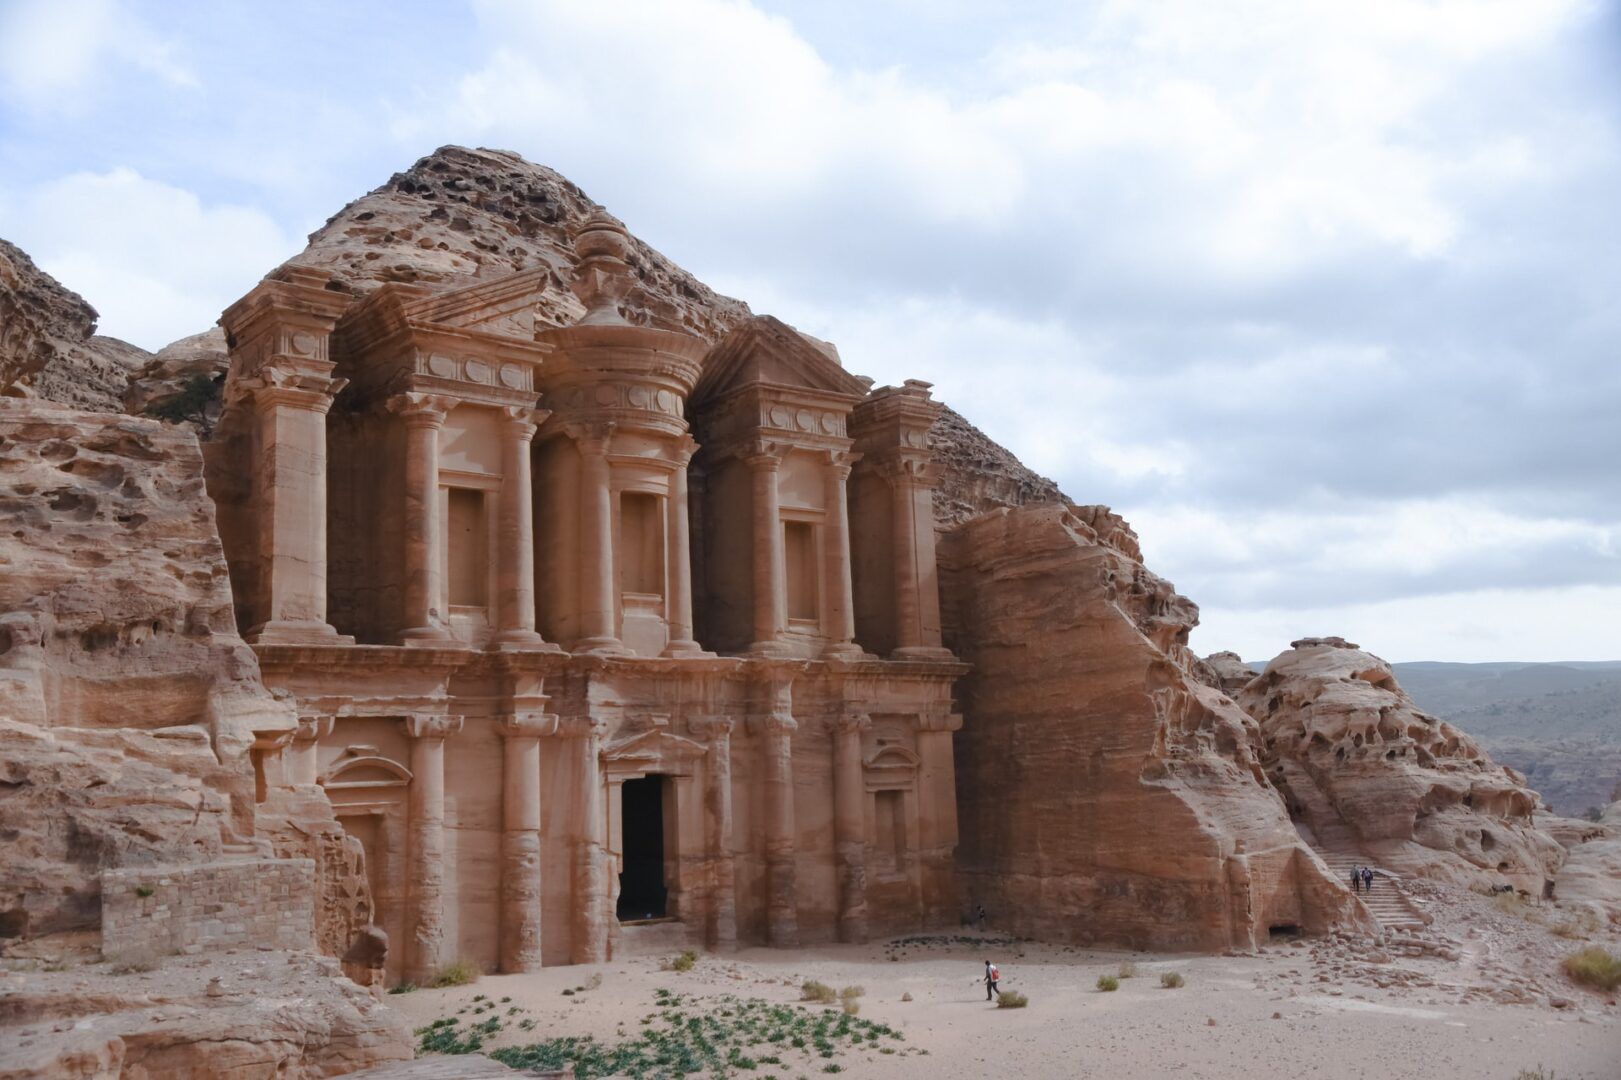 Cosa vedere a Petra: Una delle 7 meraviglie del mondo moderno